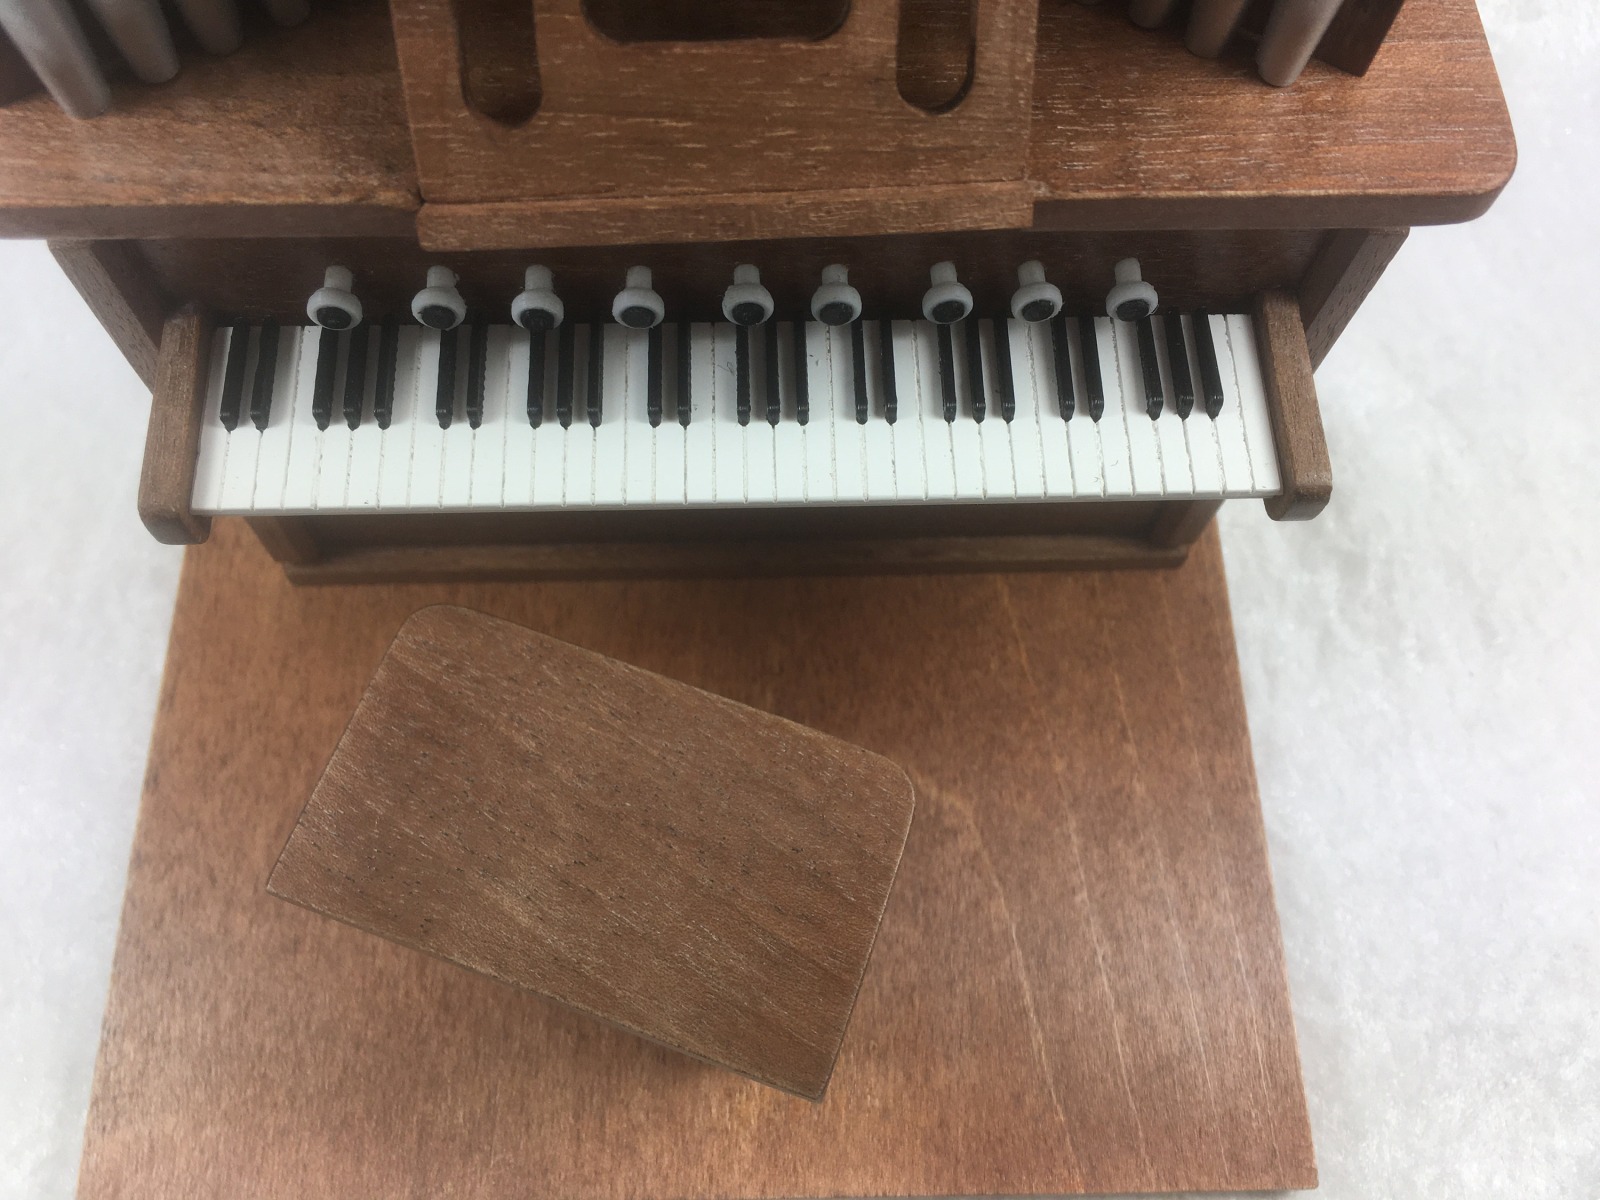 Klaviertastatur Pianotastatur Orgeltastatur zum einbauen in ihr eigenes hergestelltes Instrument für das Puppenhaus Miniatur 1zu12 8